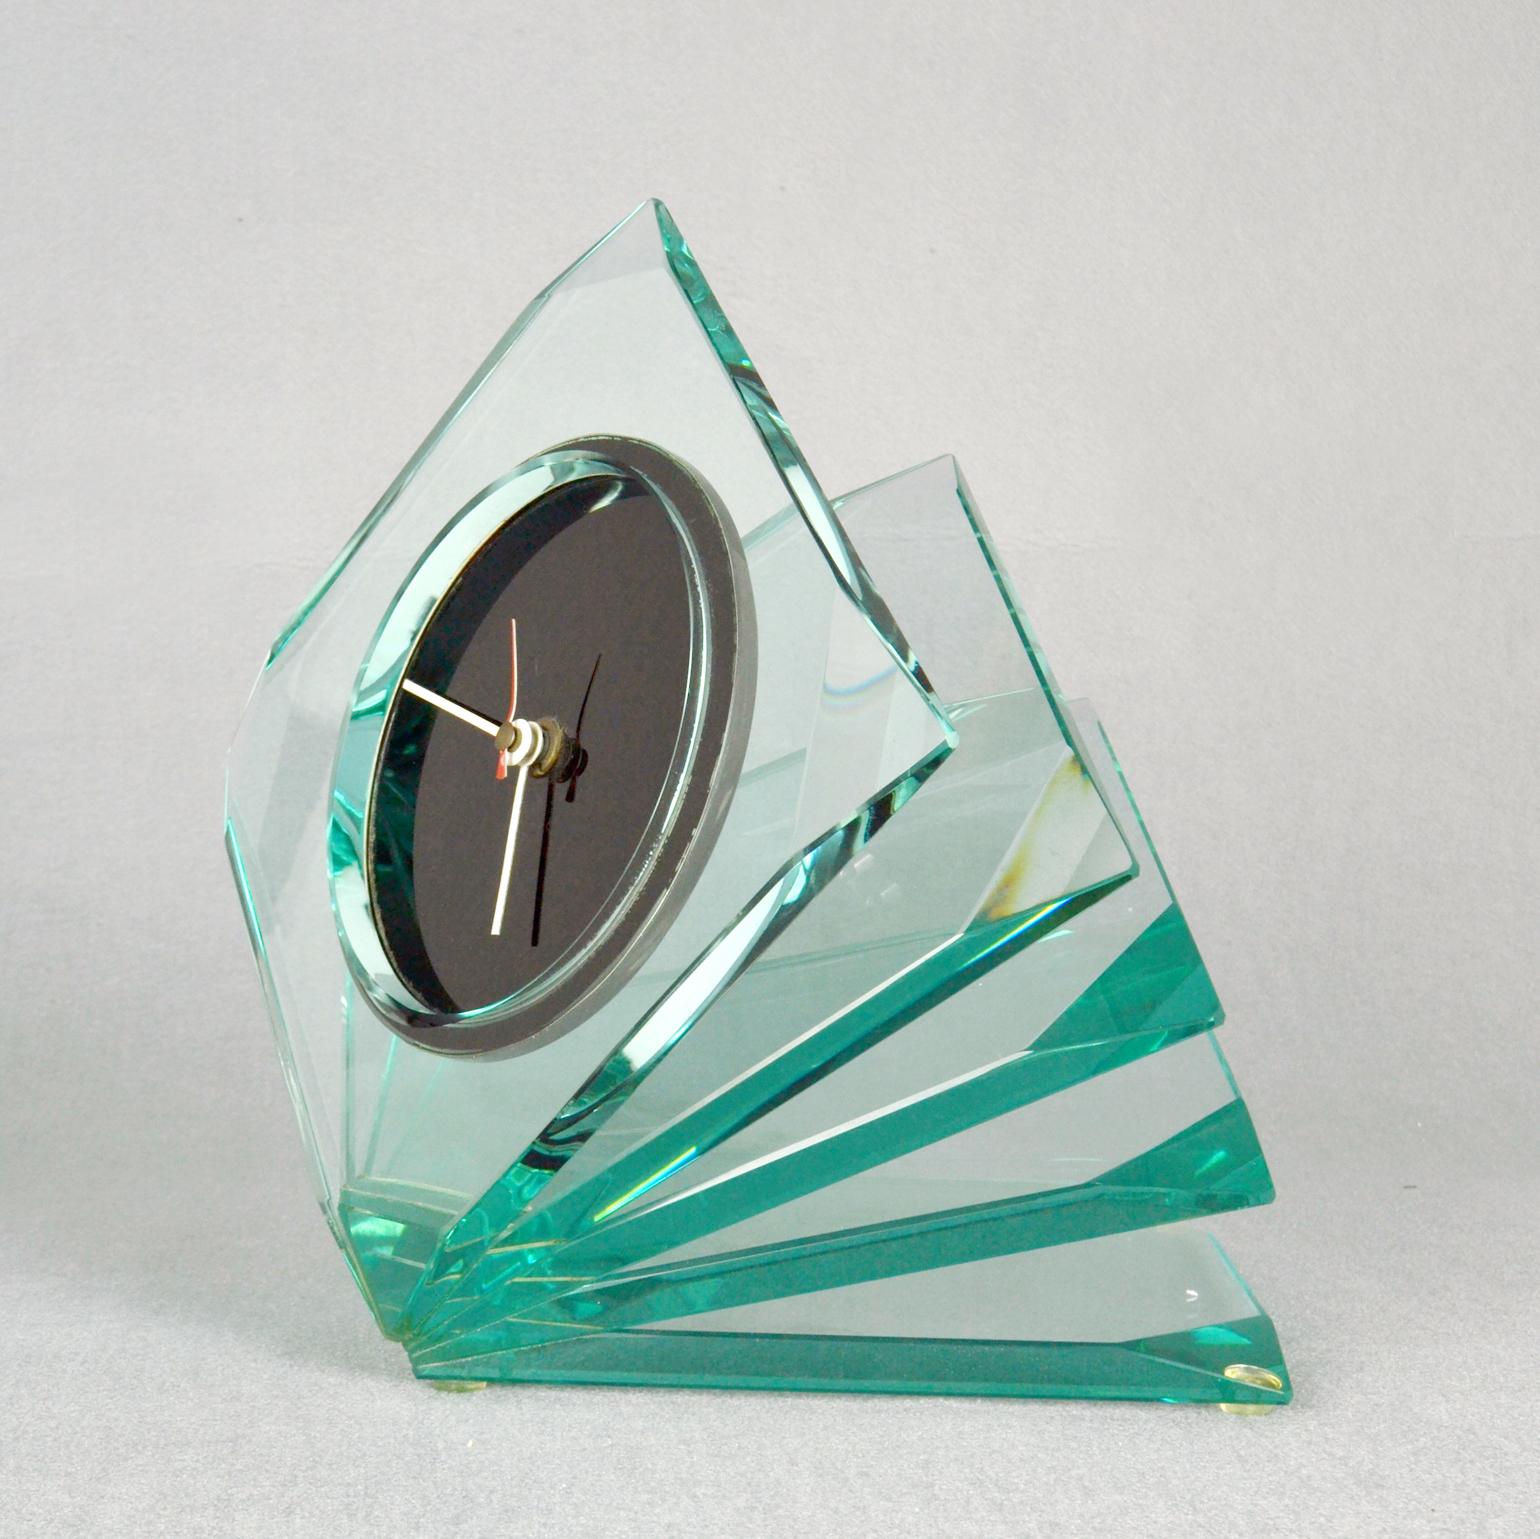 L'horloge en verre Cristal, attribuée à Fontana Arte, Italie, années 1970, est composée de 5 segments de verre finement taillés et soudés entre eux. Ils sont positionnés comme un ventilateur dans une direction ascendante. L'horloge est alimentée par